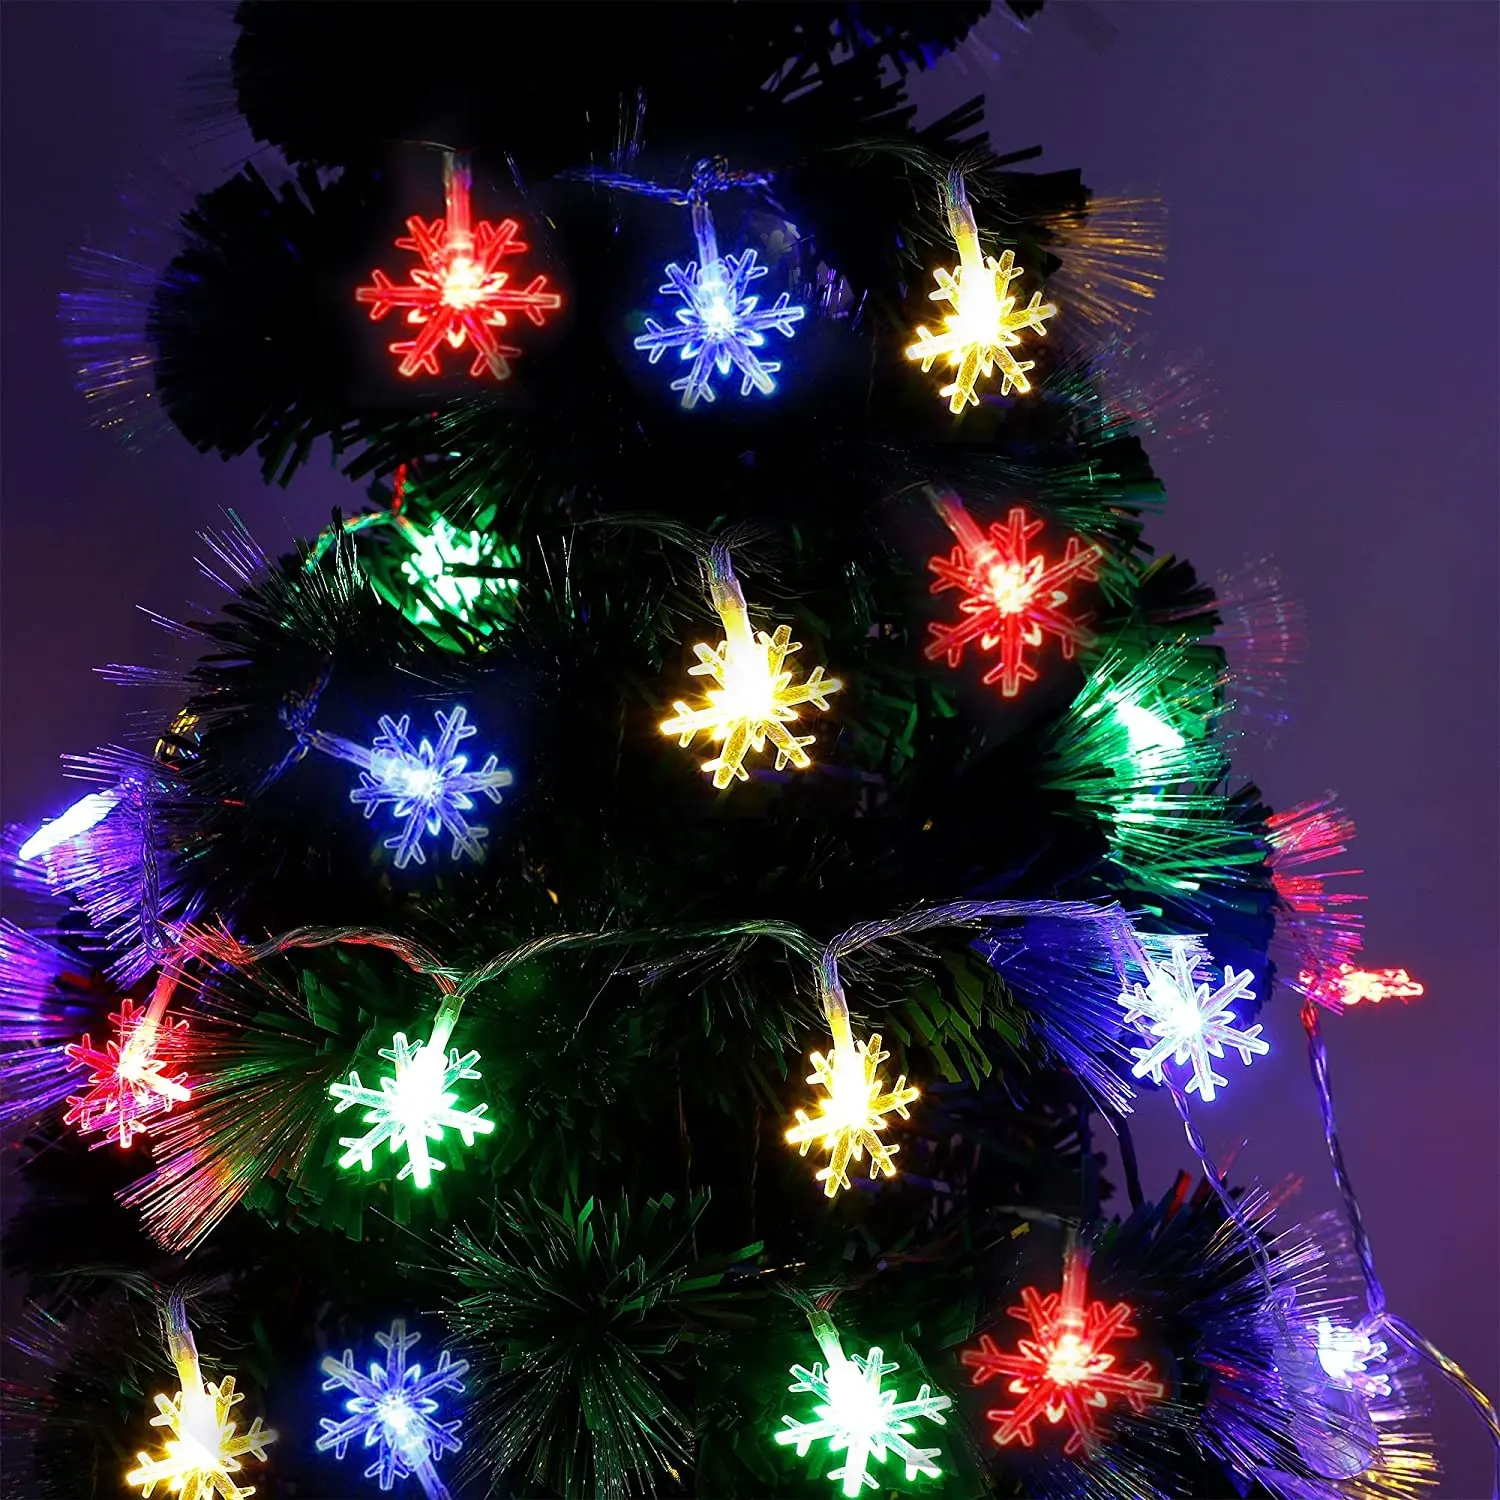 Grosir Lampu LED Snowflafke Surya 16FT 8 Mode Pencahayaan 30 Lampu LED Tali Pohon Natal Dekorasi Taman Luar Ruangan Pesta